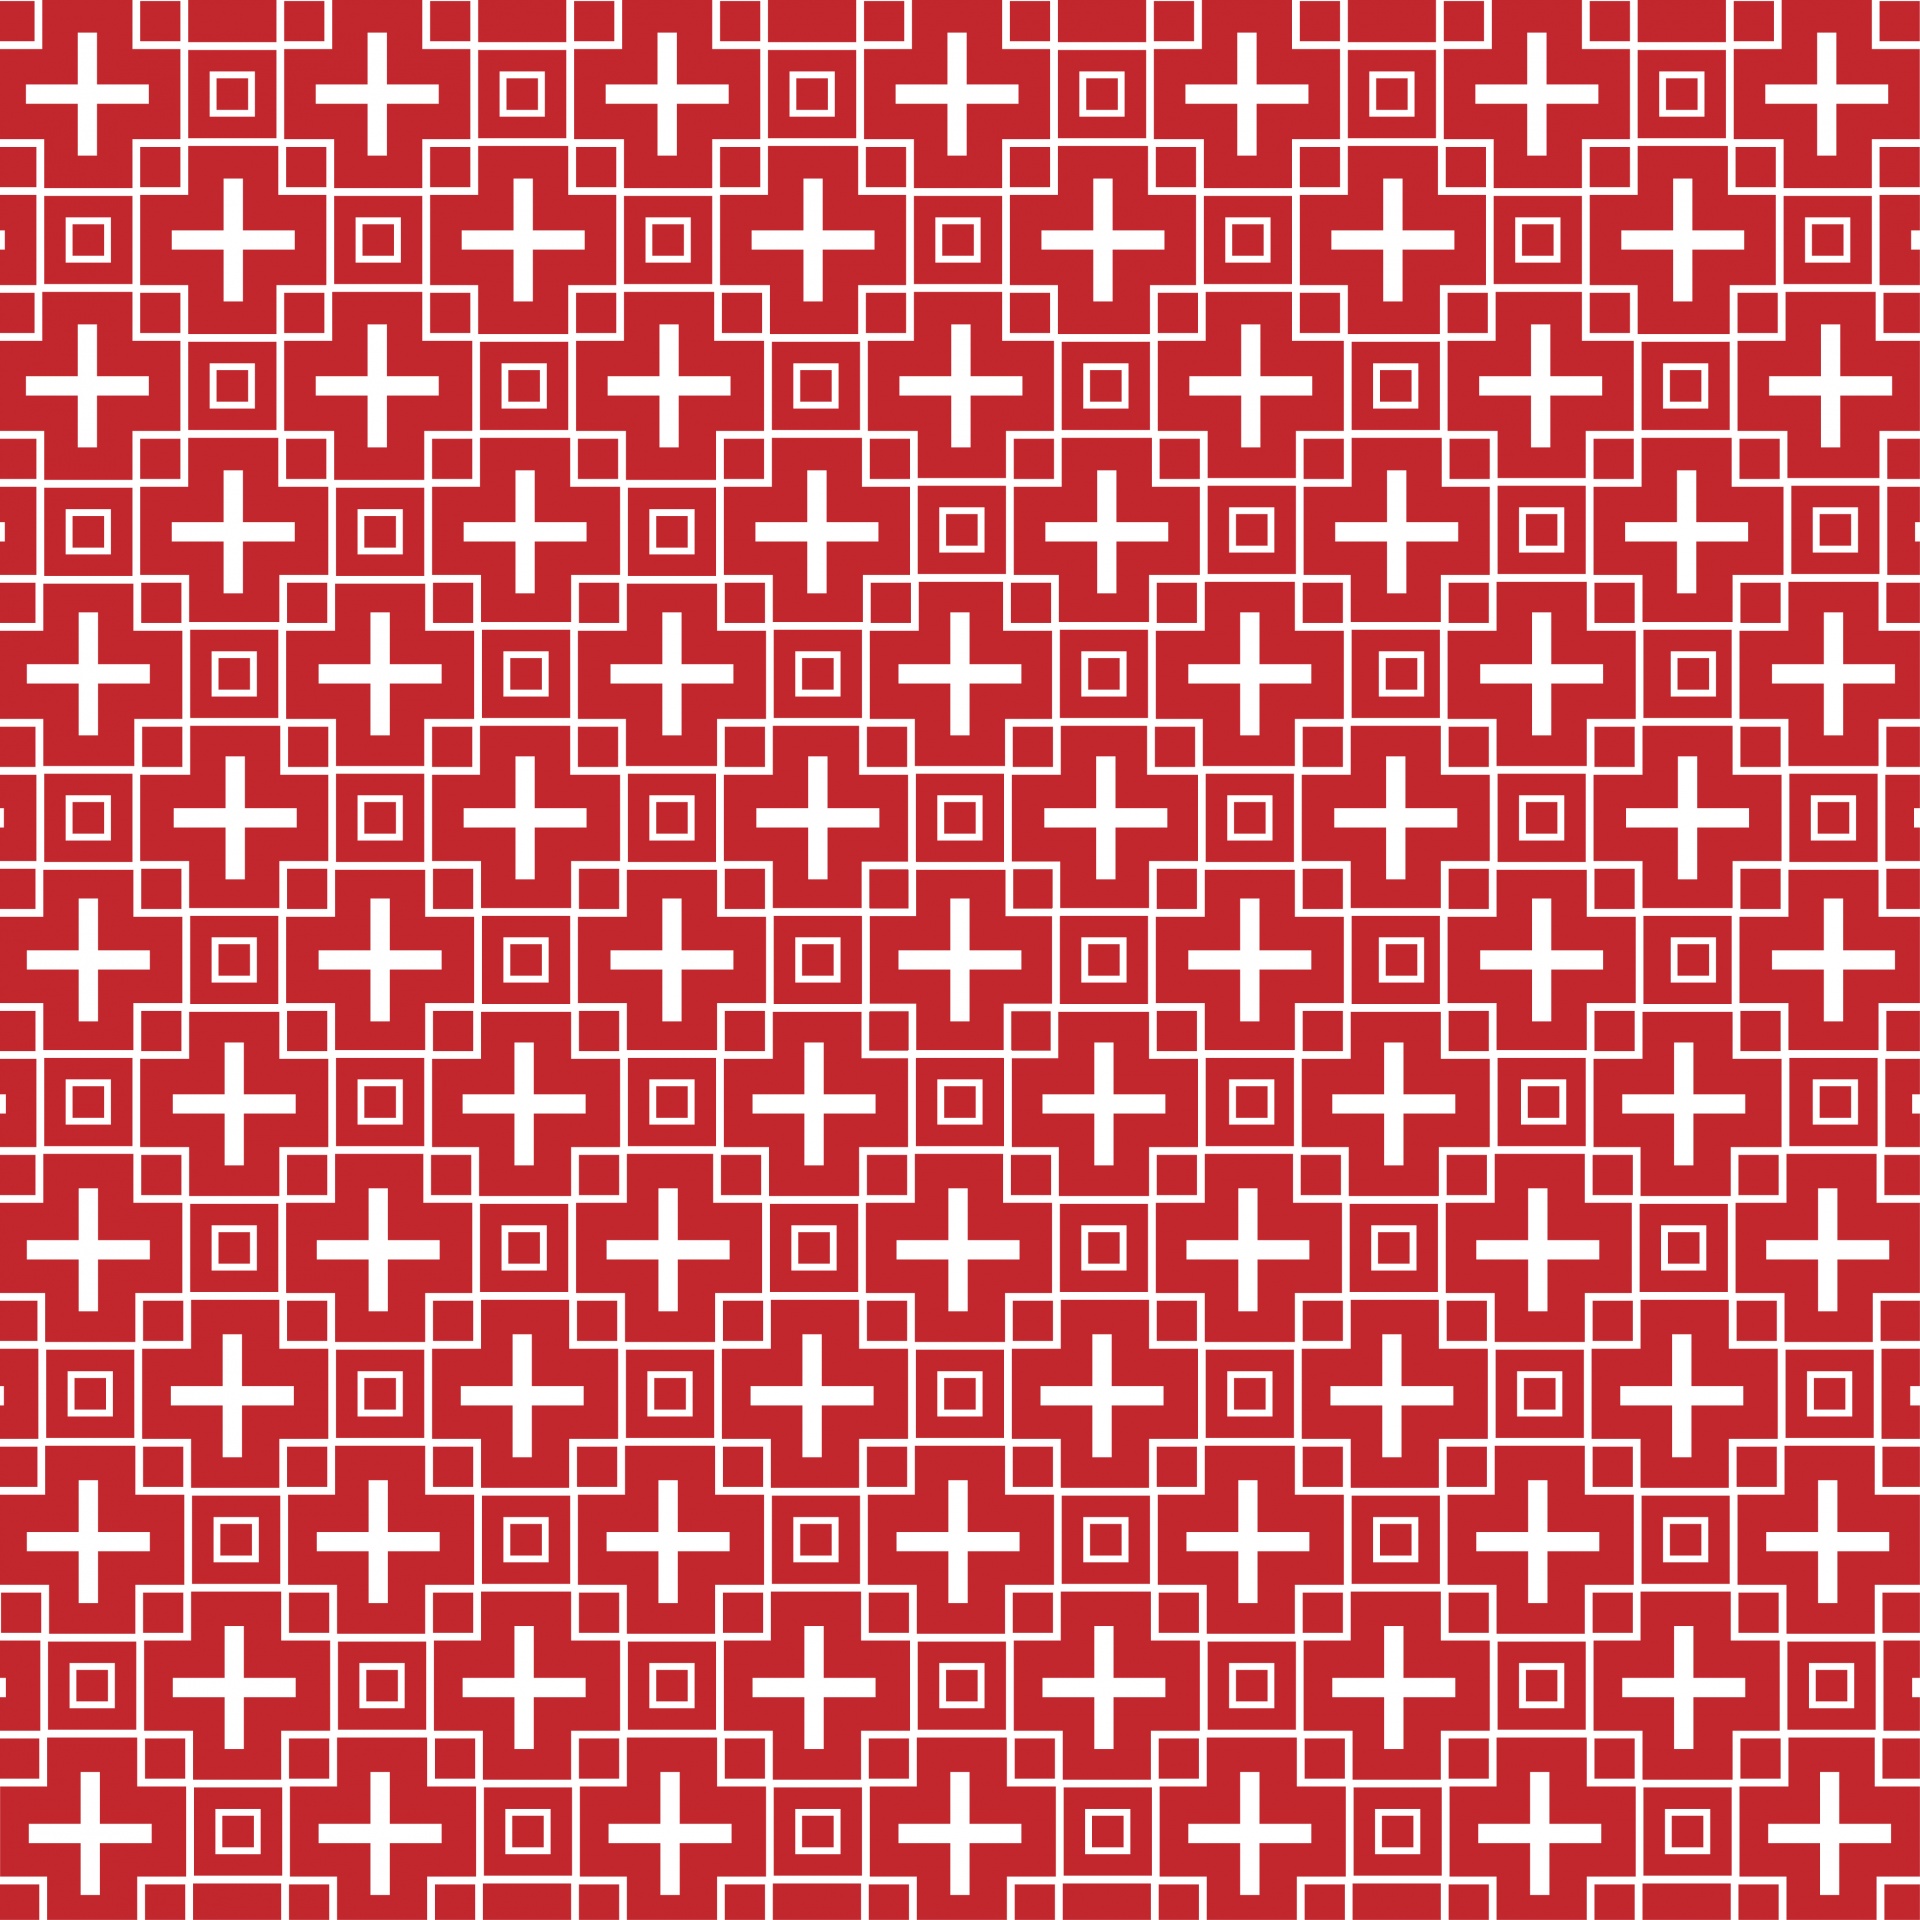 Squares Cruz Roja del papel pintado